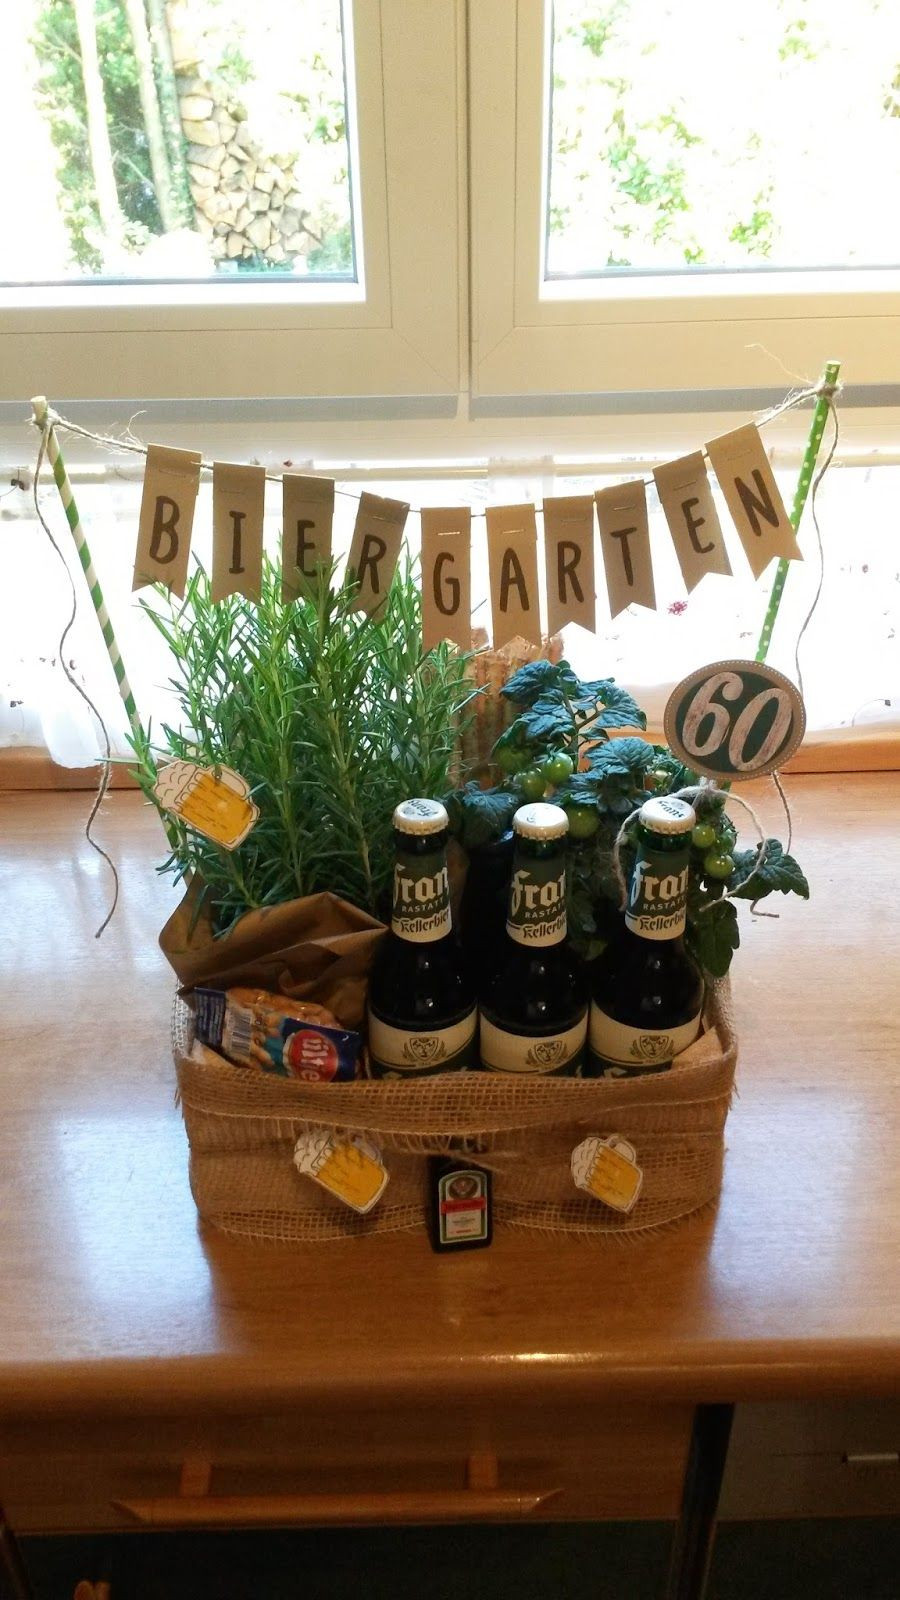 Originelle Geschenke Für Männer
 Biergarten 60 Geburtstag Geschenk